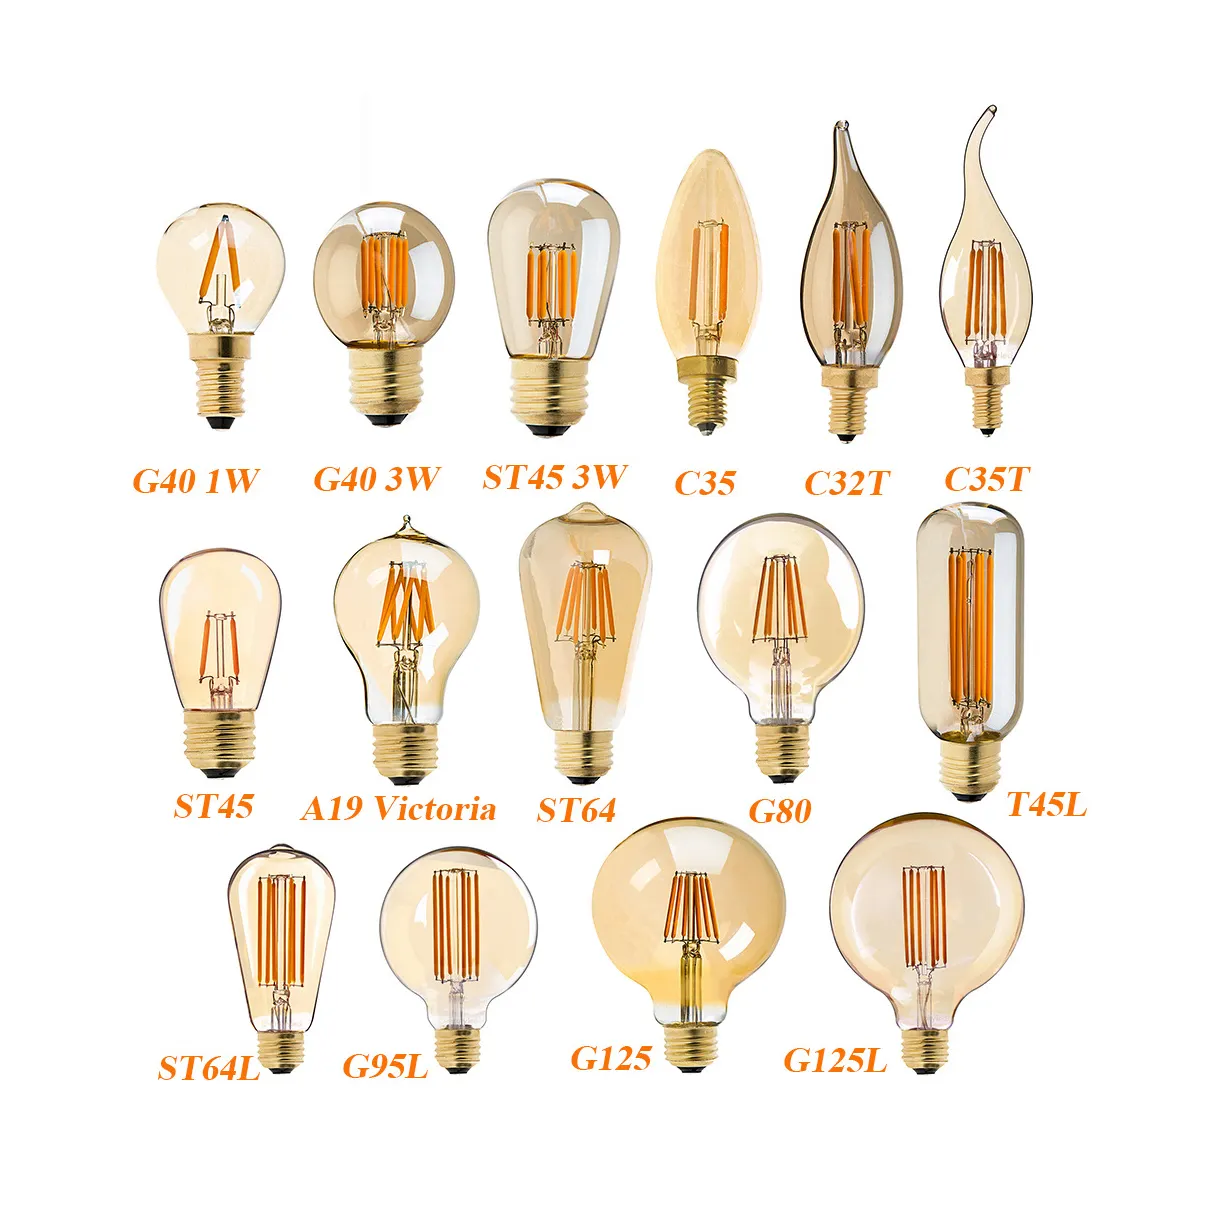 Giá Bán Buôn Dimmable Vintage Edison Bóng Đèn Ánh Sáng G95 Led Filament Bulb